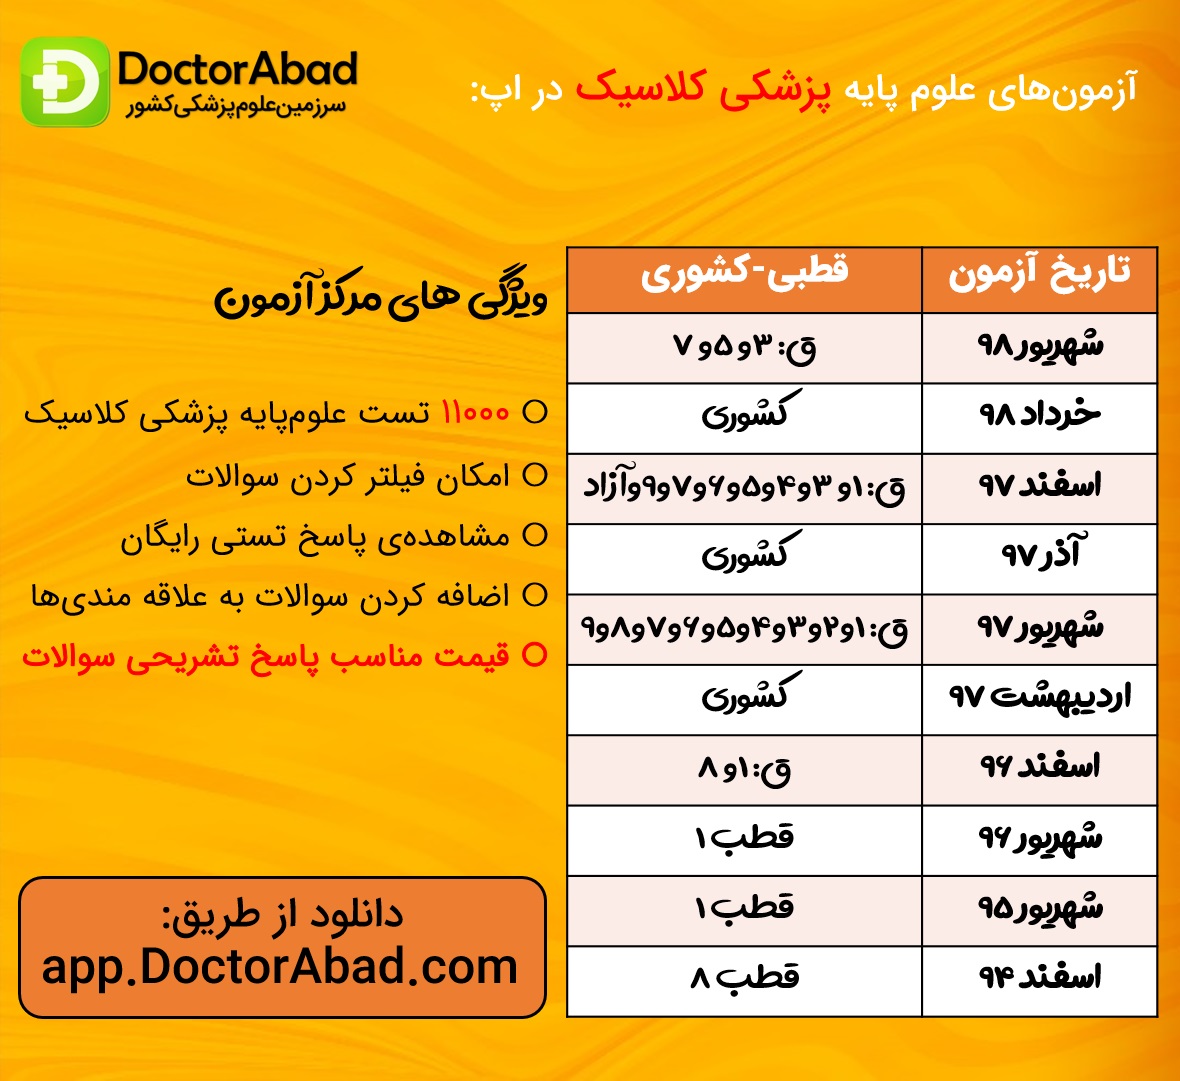 آزمون های علوم پایه پزشکی کلاسیک موجود در اپلیکیشن دکتر آباد